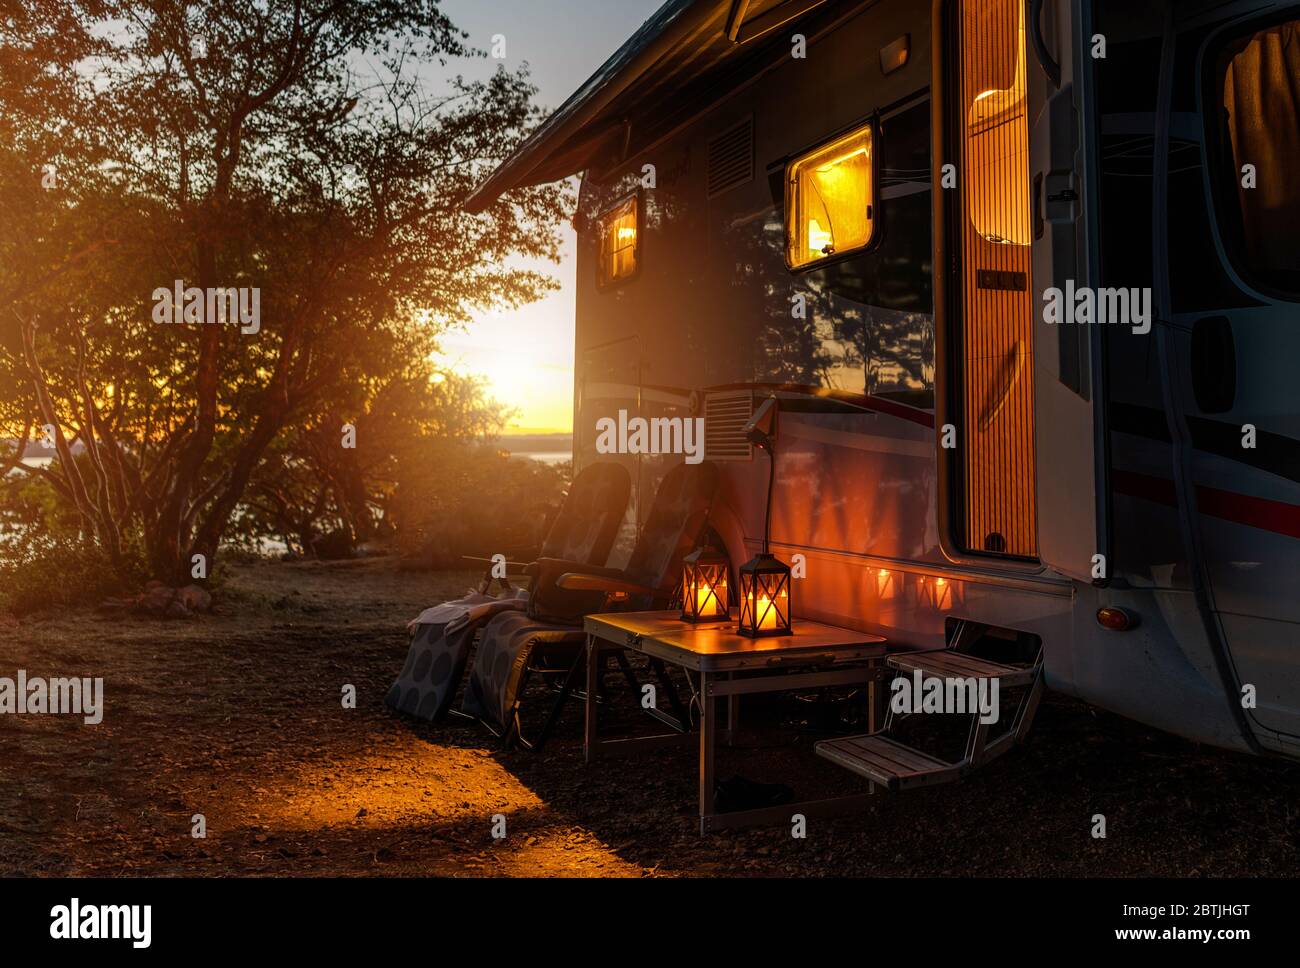 Avventure di viaggio su strada. Notte calda calma su un campeggio. Camper, sedie da esterno e luce romantica dalle Lanterne. Vacanza in veicolo da diporto. Foto Stock